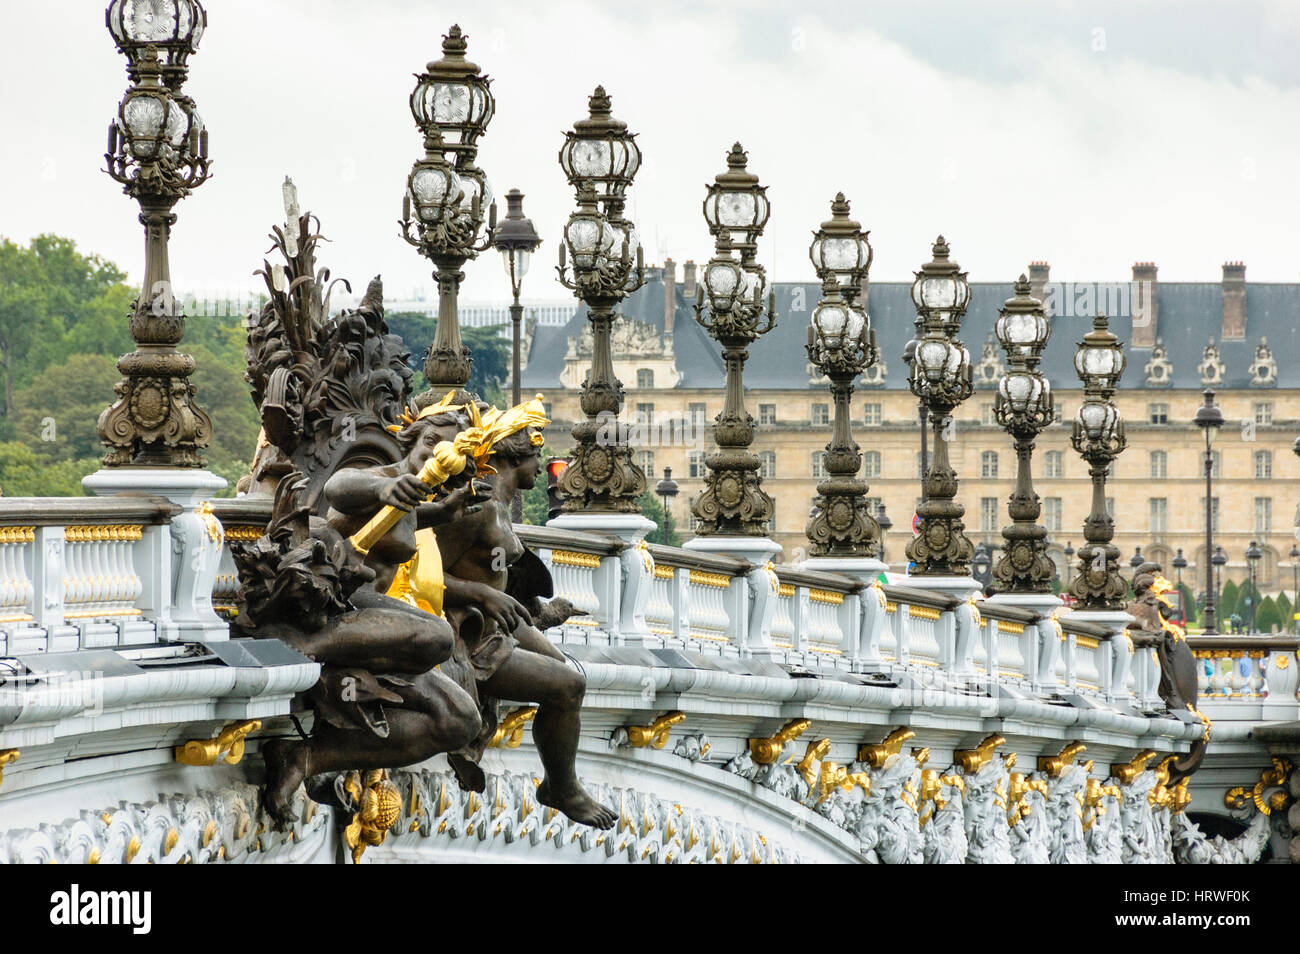 La section de Pont Alexandre III avec des lumières de rue, Paris, France. Banque D'Images